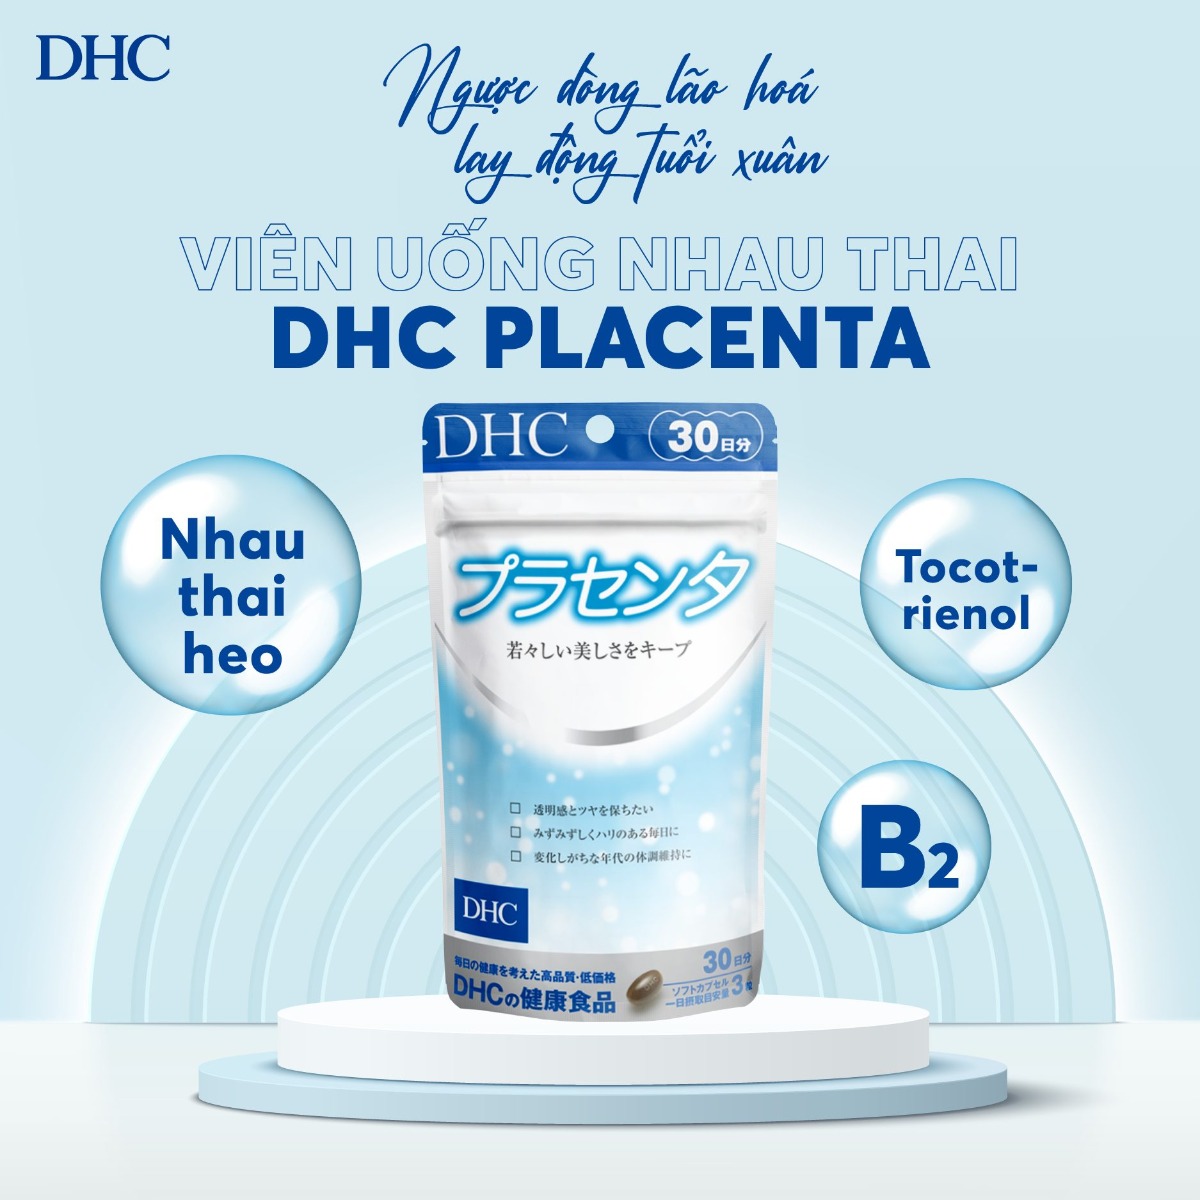 Viên uống nhau thai DHC Placenta đẹp da 30 ngày